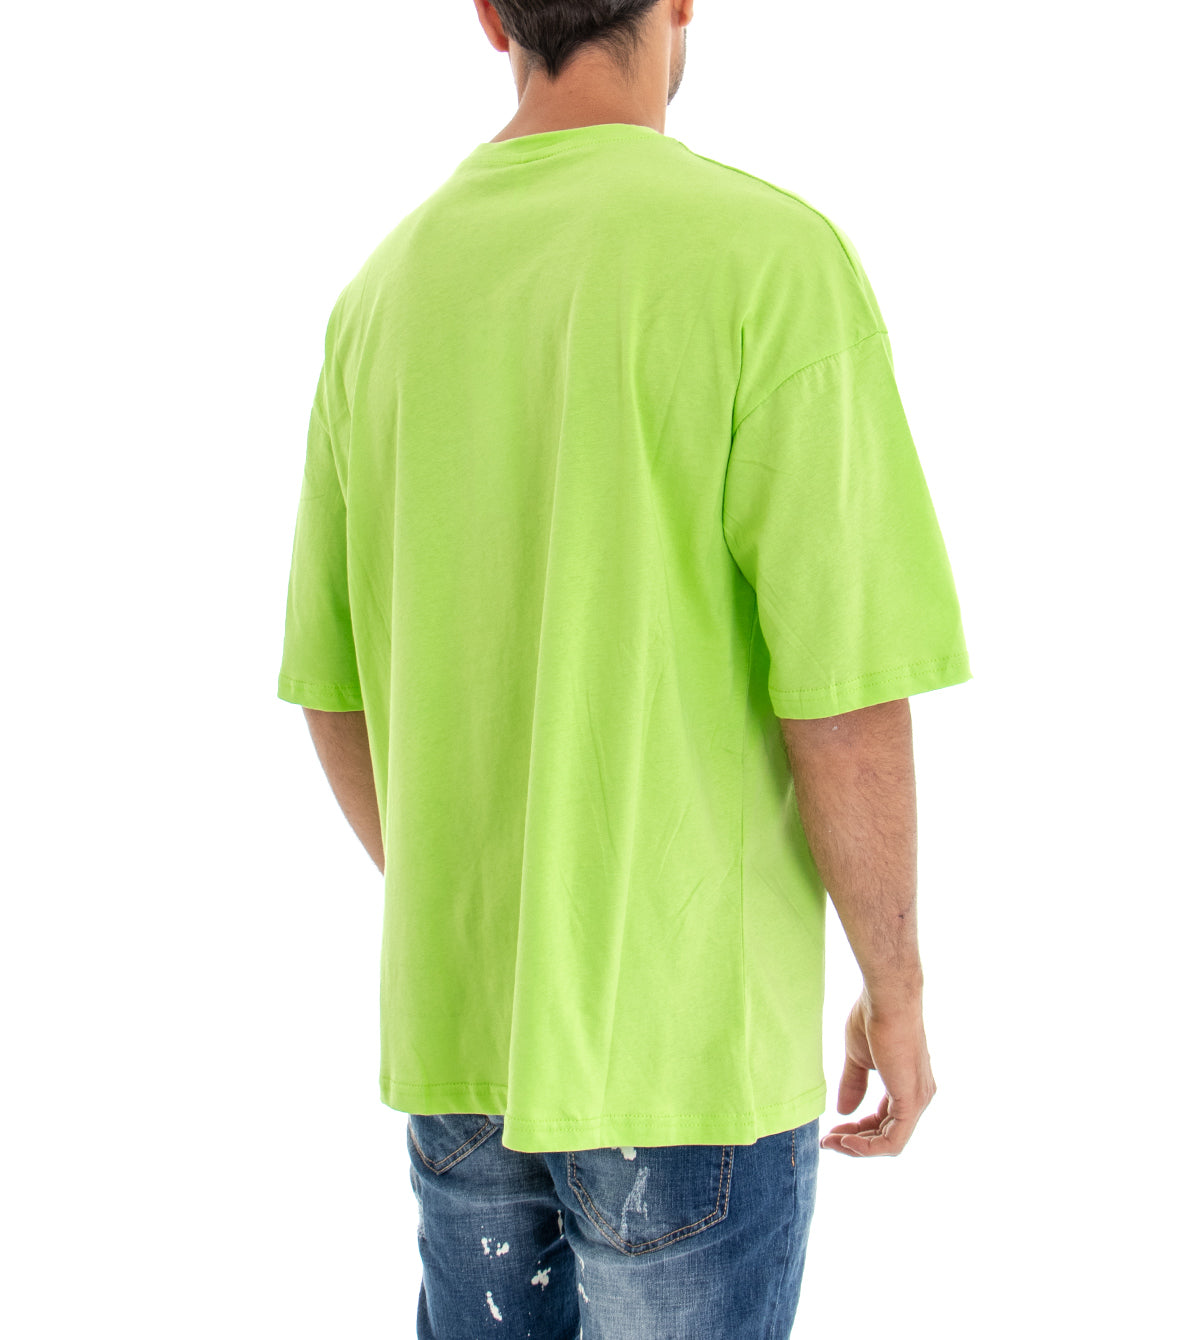 T-shirt Uomo Maglia Maniche Corte Over Size Tinta Unita Verde Acido Stampa Girocollo GIOSAL